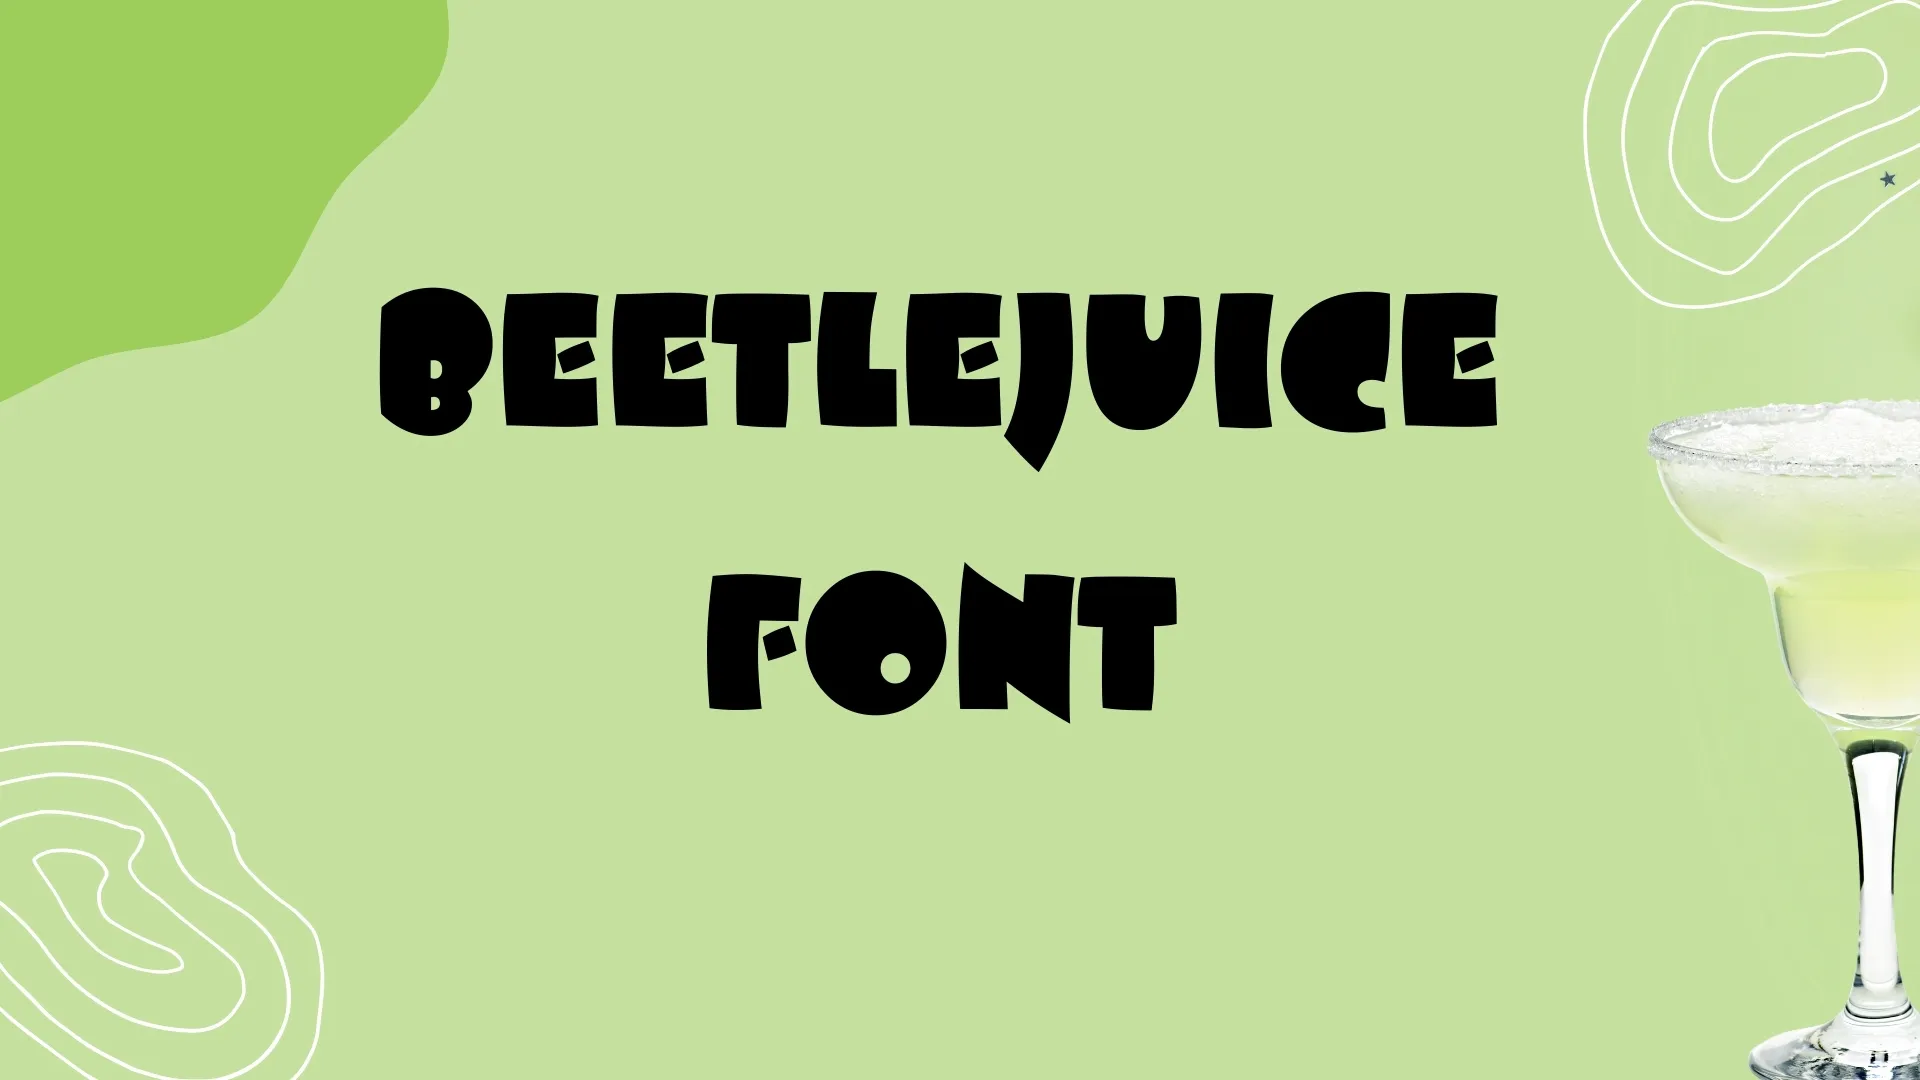 Beetlejuice Font